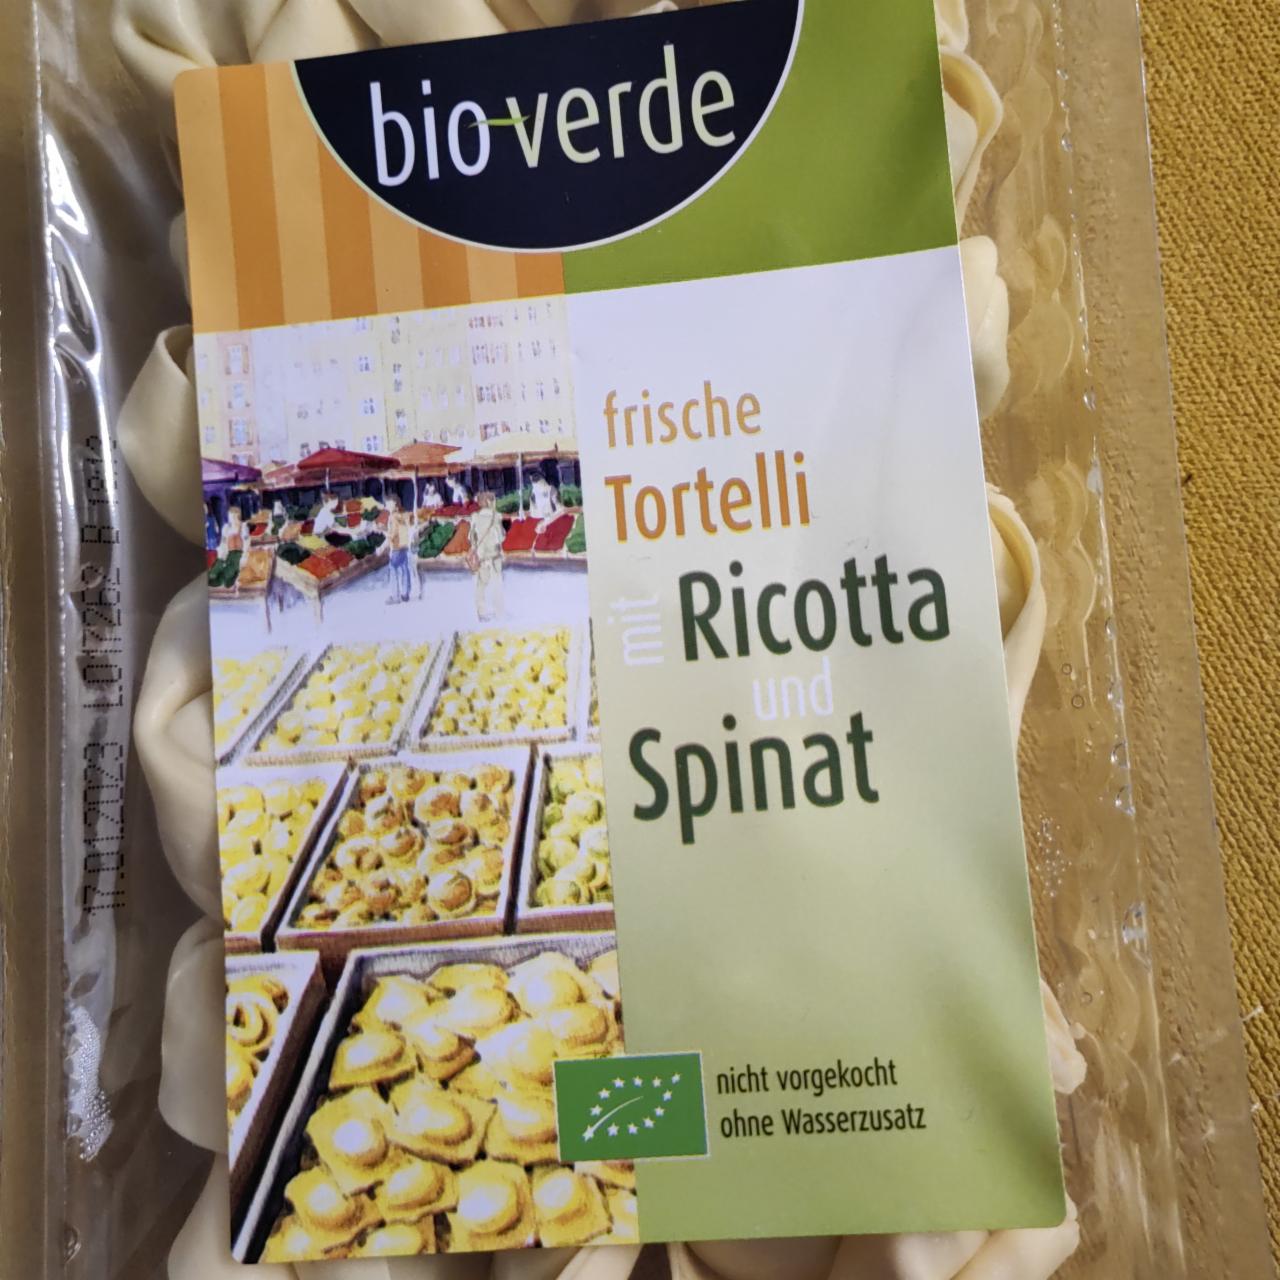 Fotografie - Frische tortelli mit ricotta und spinat Bio Verde